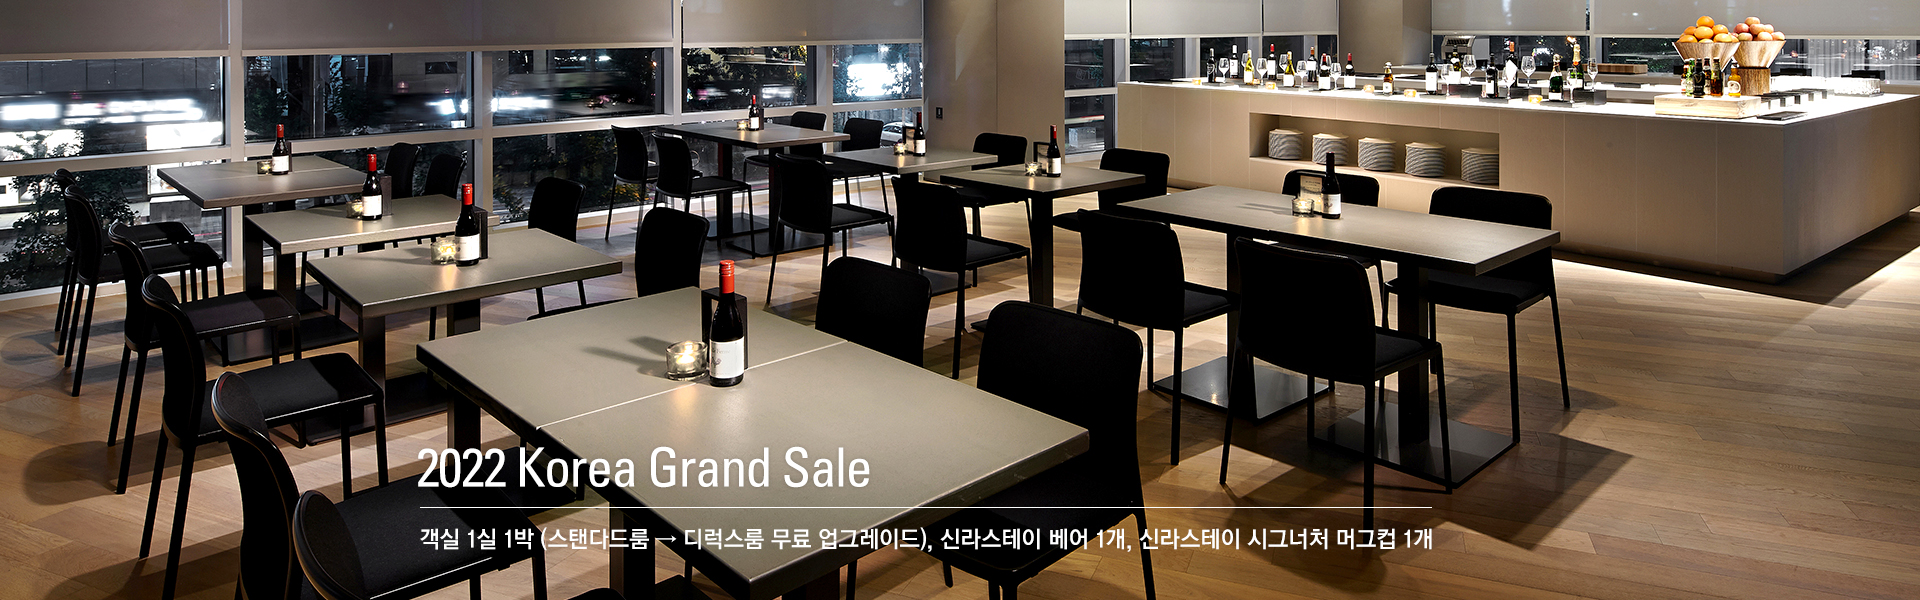 2022 Korea Grand Sale